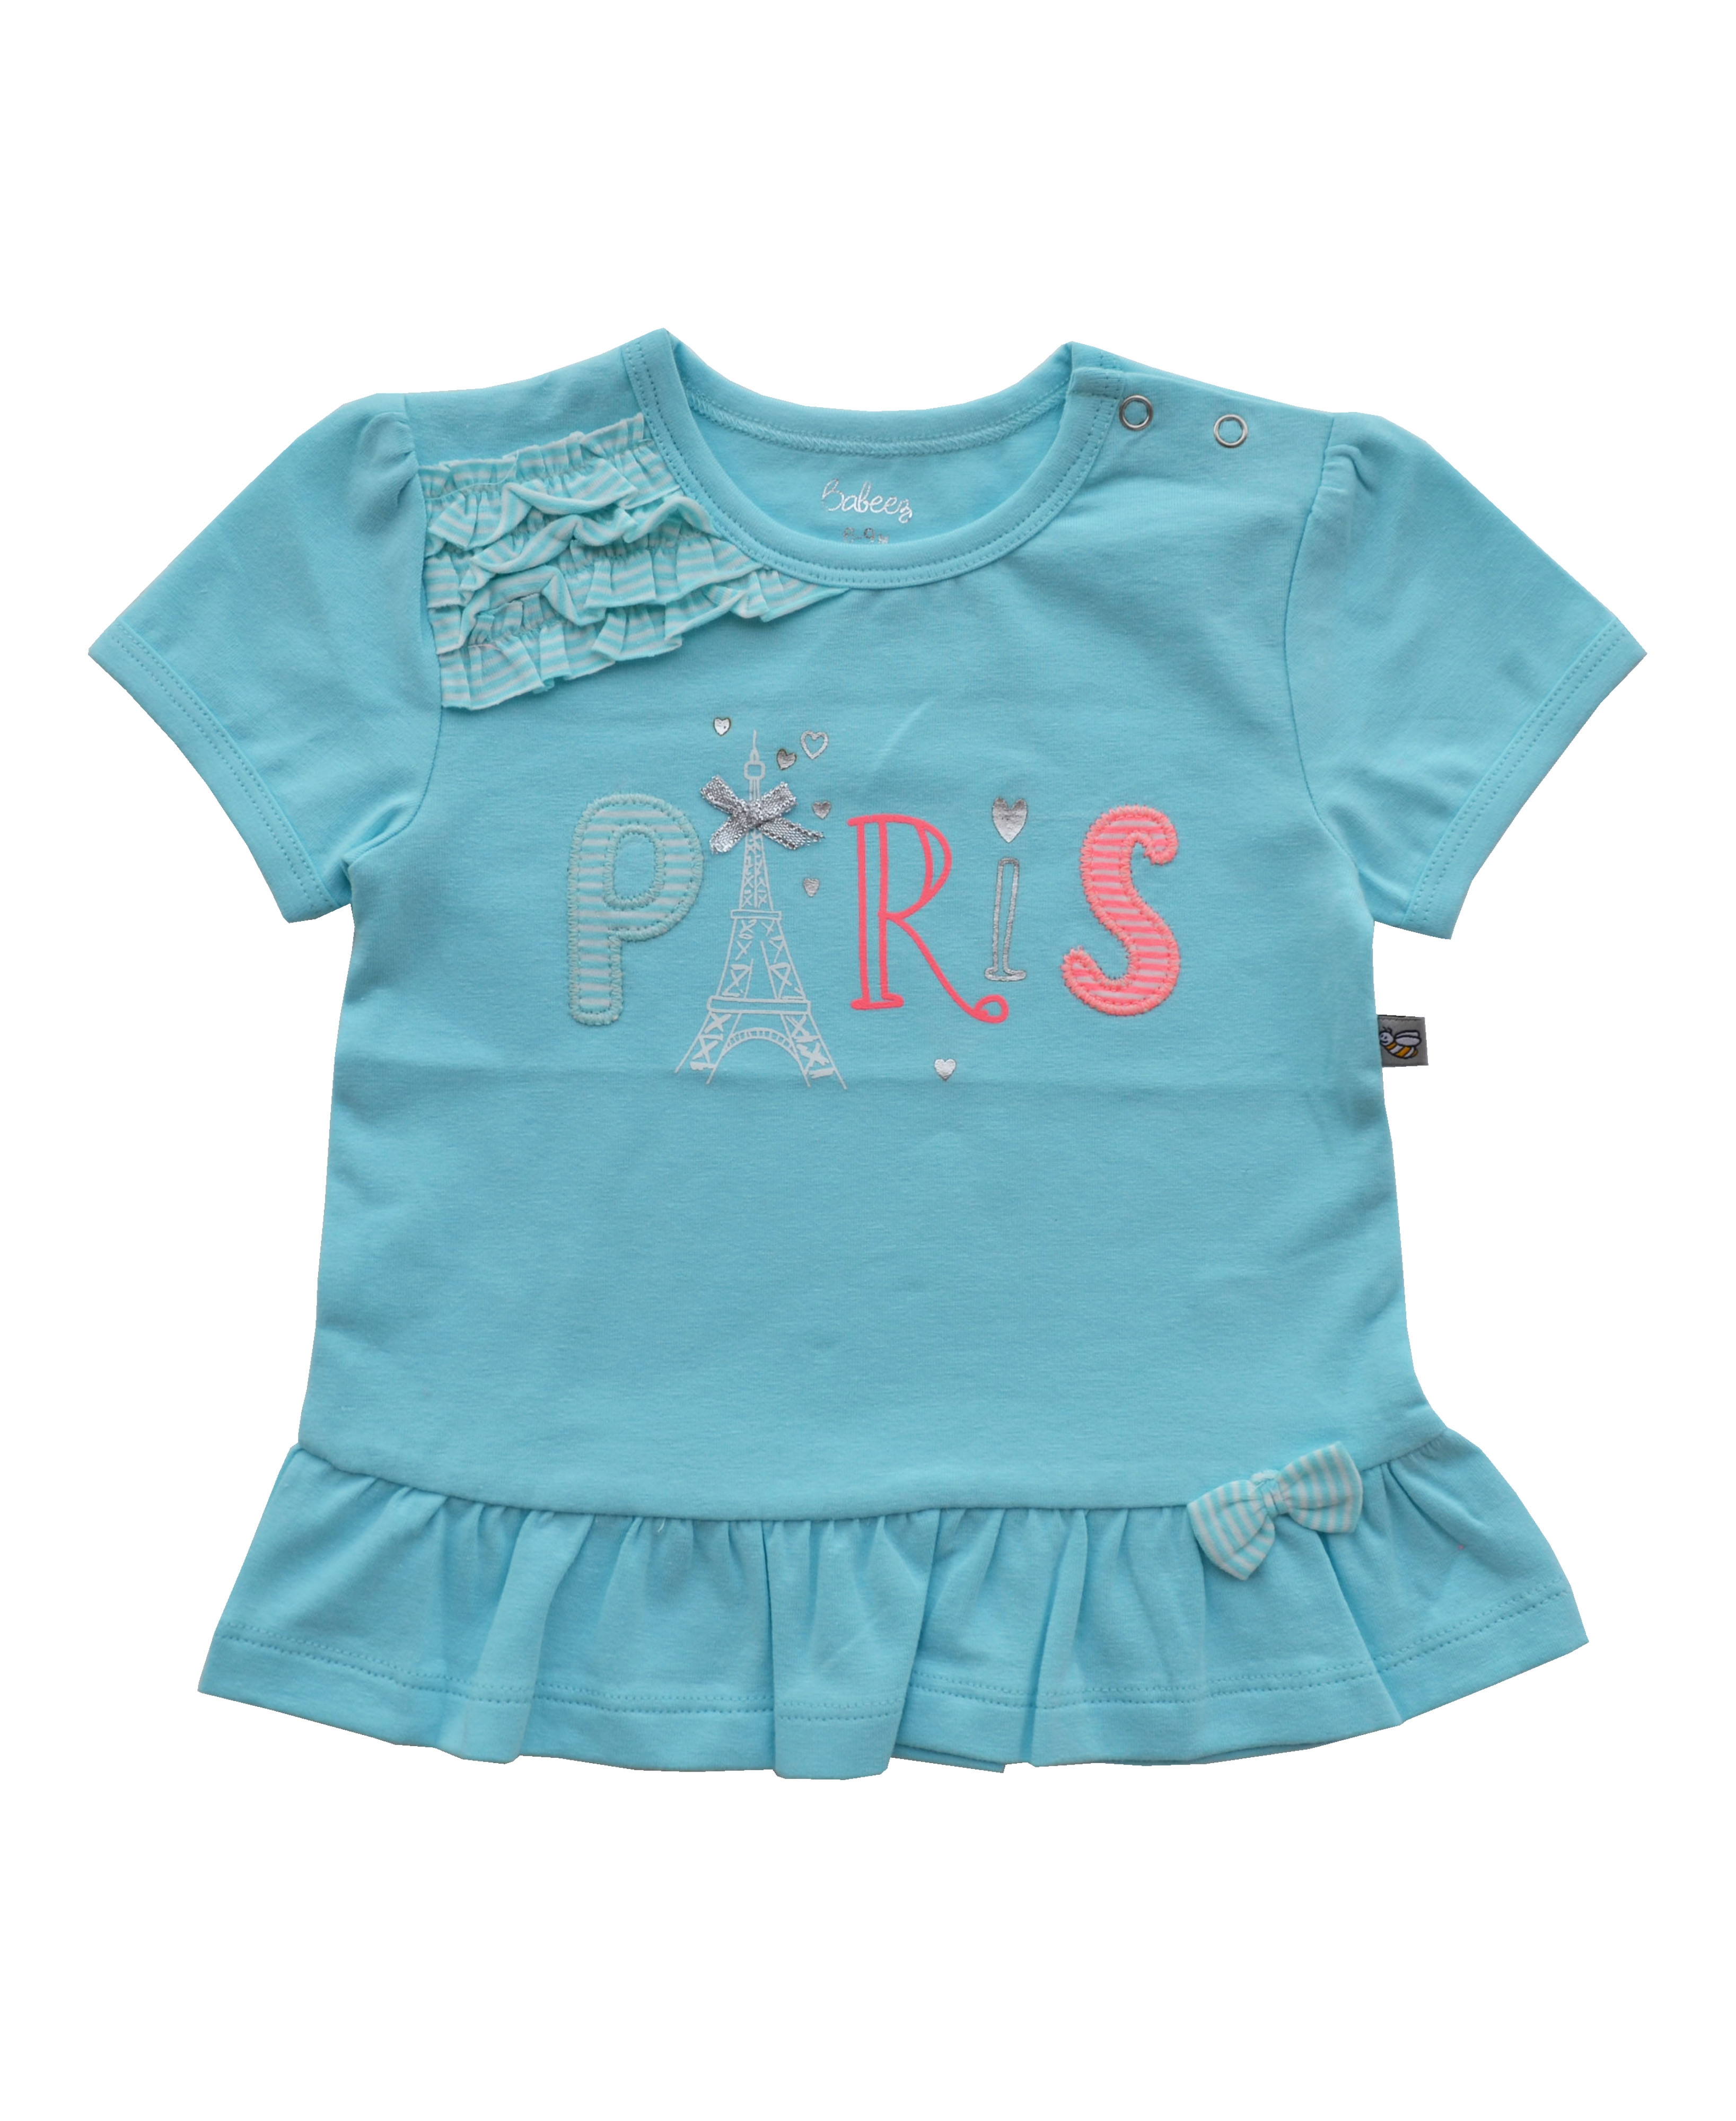 PARIS Applique on Mint colour Short Sleeves Top (95% Cotton 5% Elasthan Jersey)